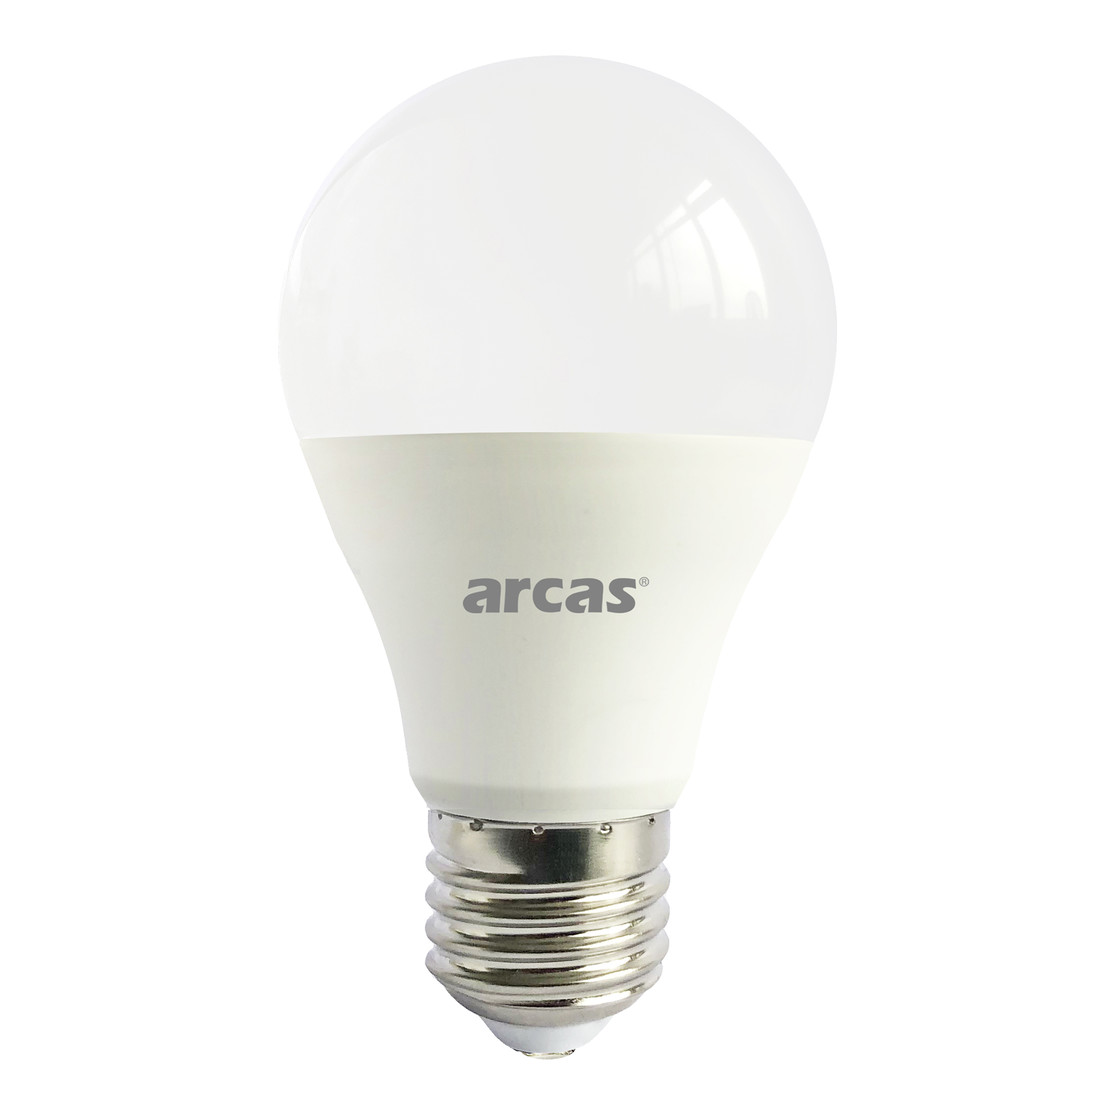 Arcas E27 LED Lampe Birne 12W 3000K 1055 Lumen Warmweiss